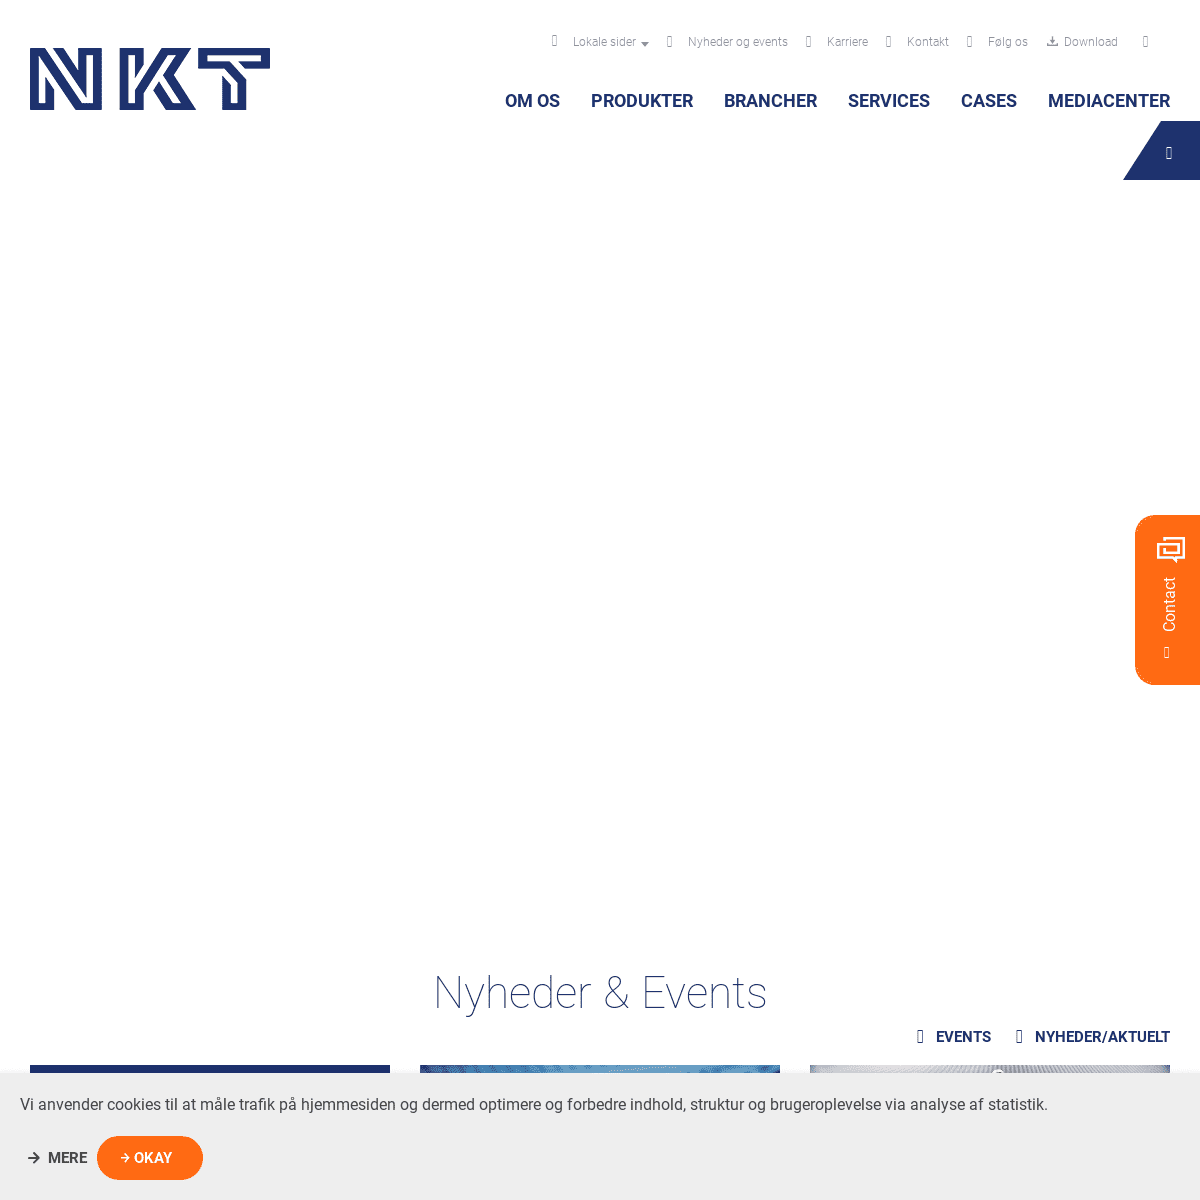 A complete backup of nkt-dk.com